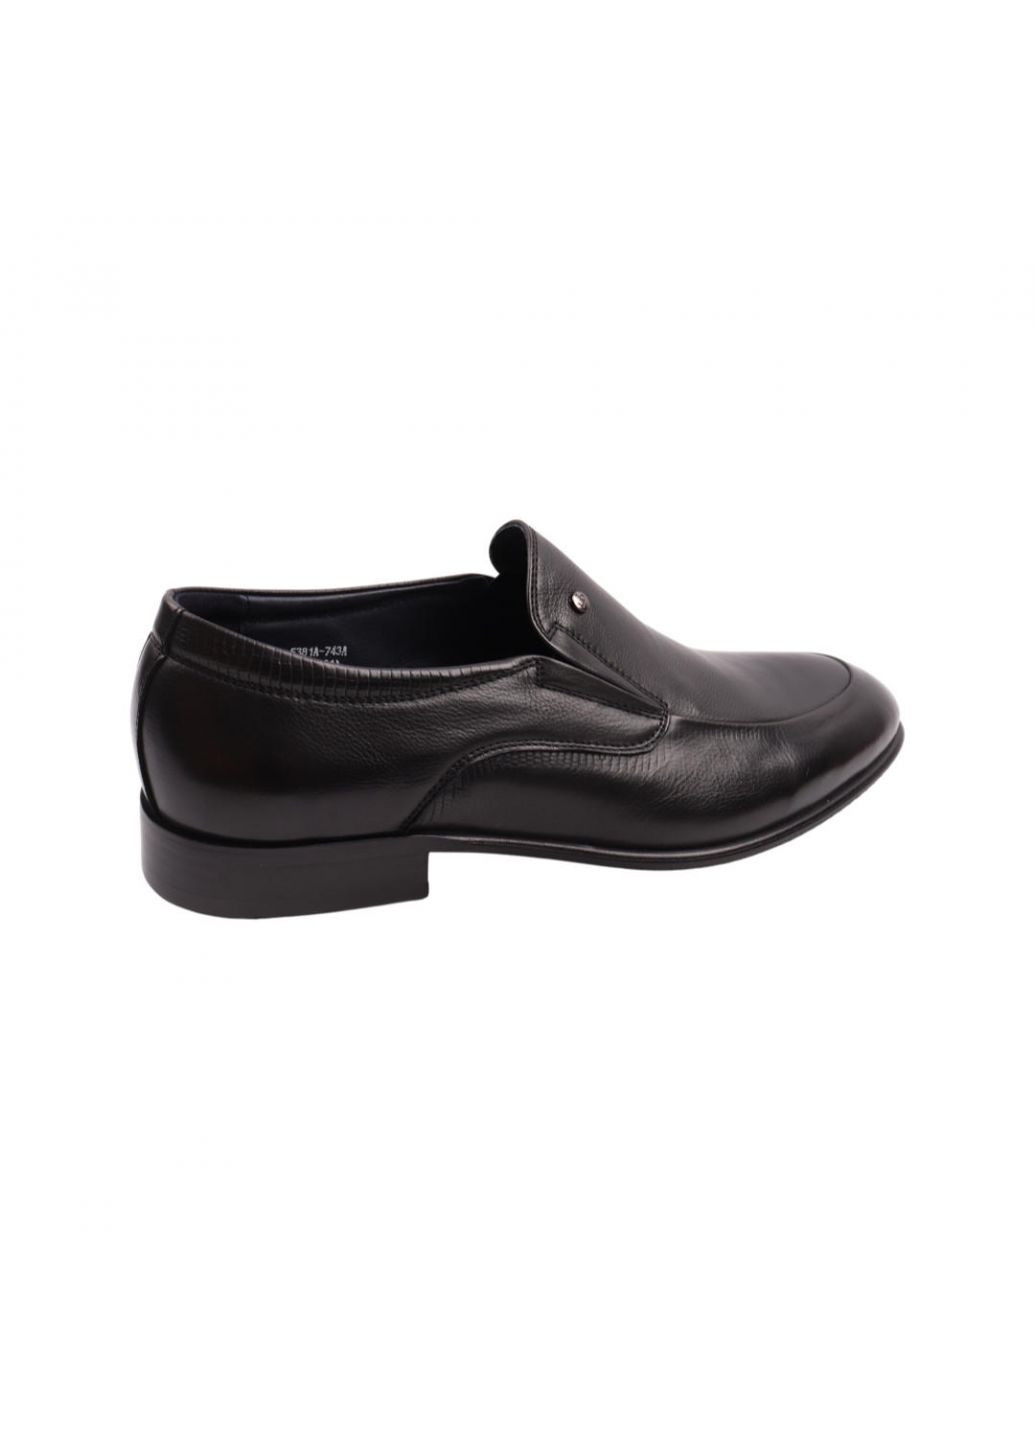 Туфлі чоловічі Lido Marinozi чорні натуральна шкіра Lido Marinozzi 274-22dt (257439091)